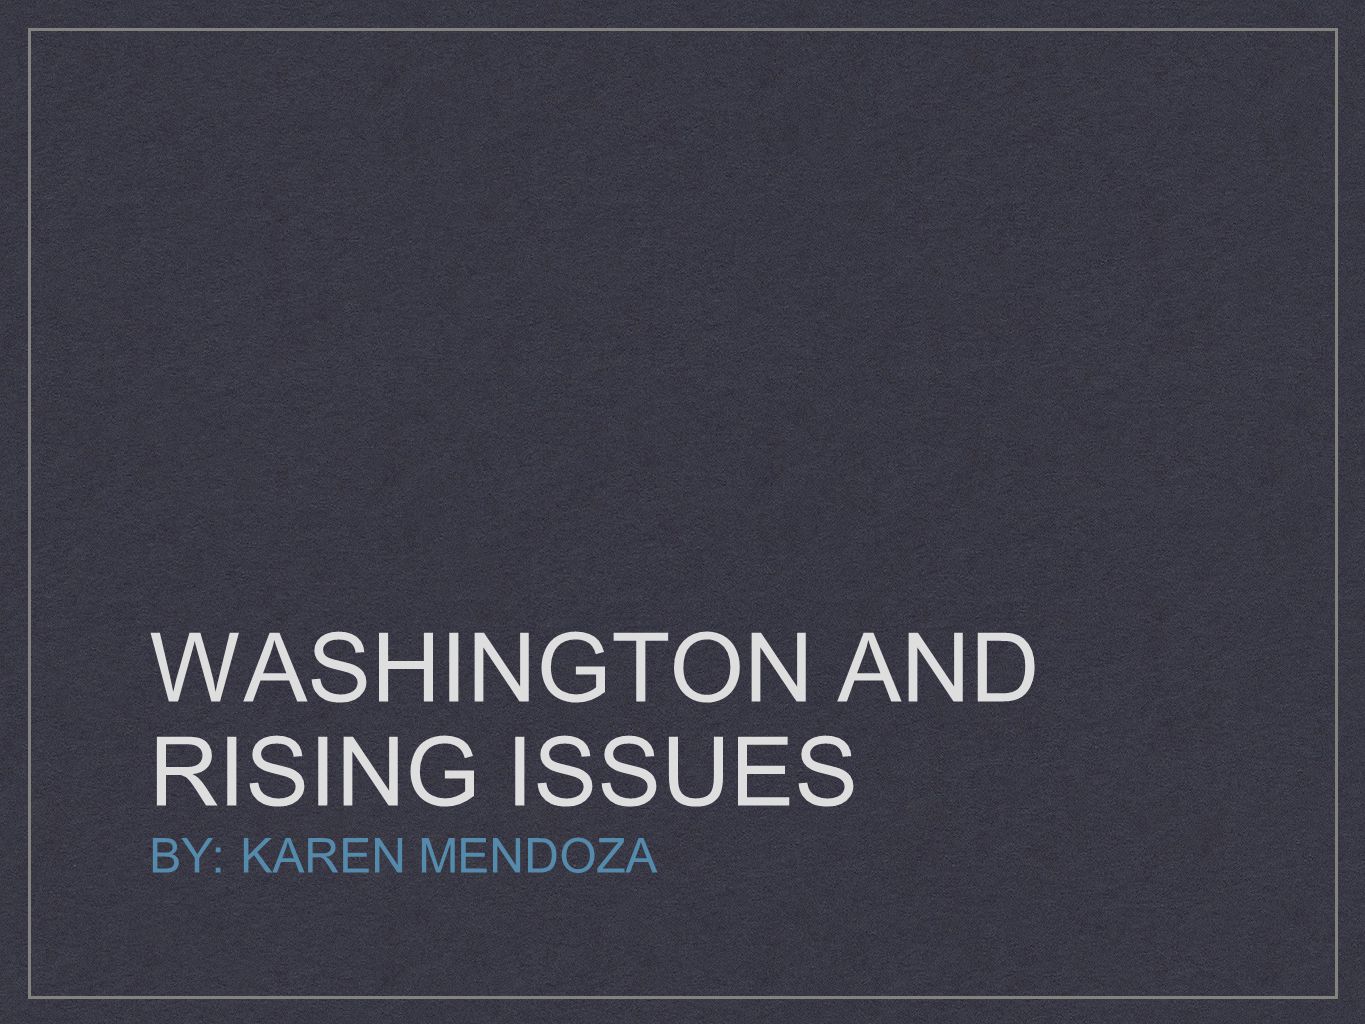 WASHINGTON AND RISING ISSUES BY: KAREN MENDOZA